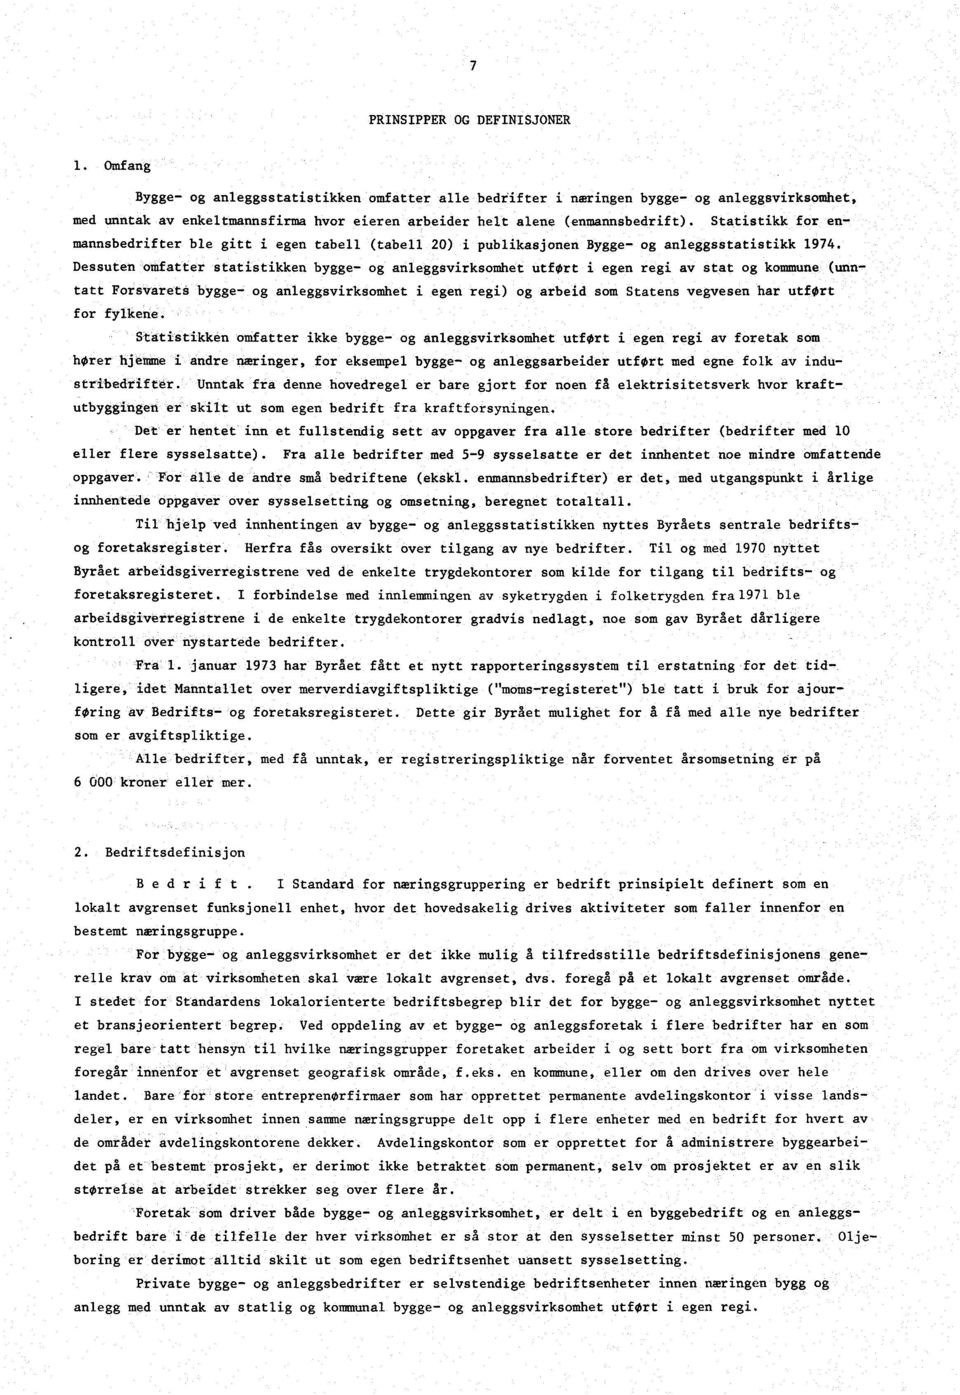 Statistikk for enmannsbedrifter ble gitt i egen tabell (tabell 20) i publikasjonen Bygge- og anleggsstatistikk 1974.